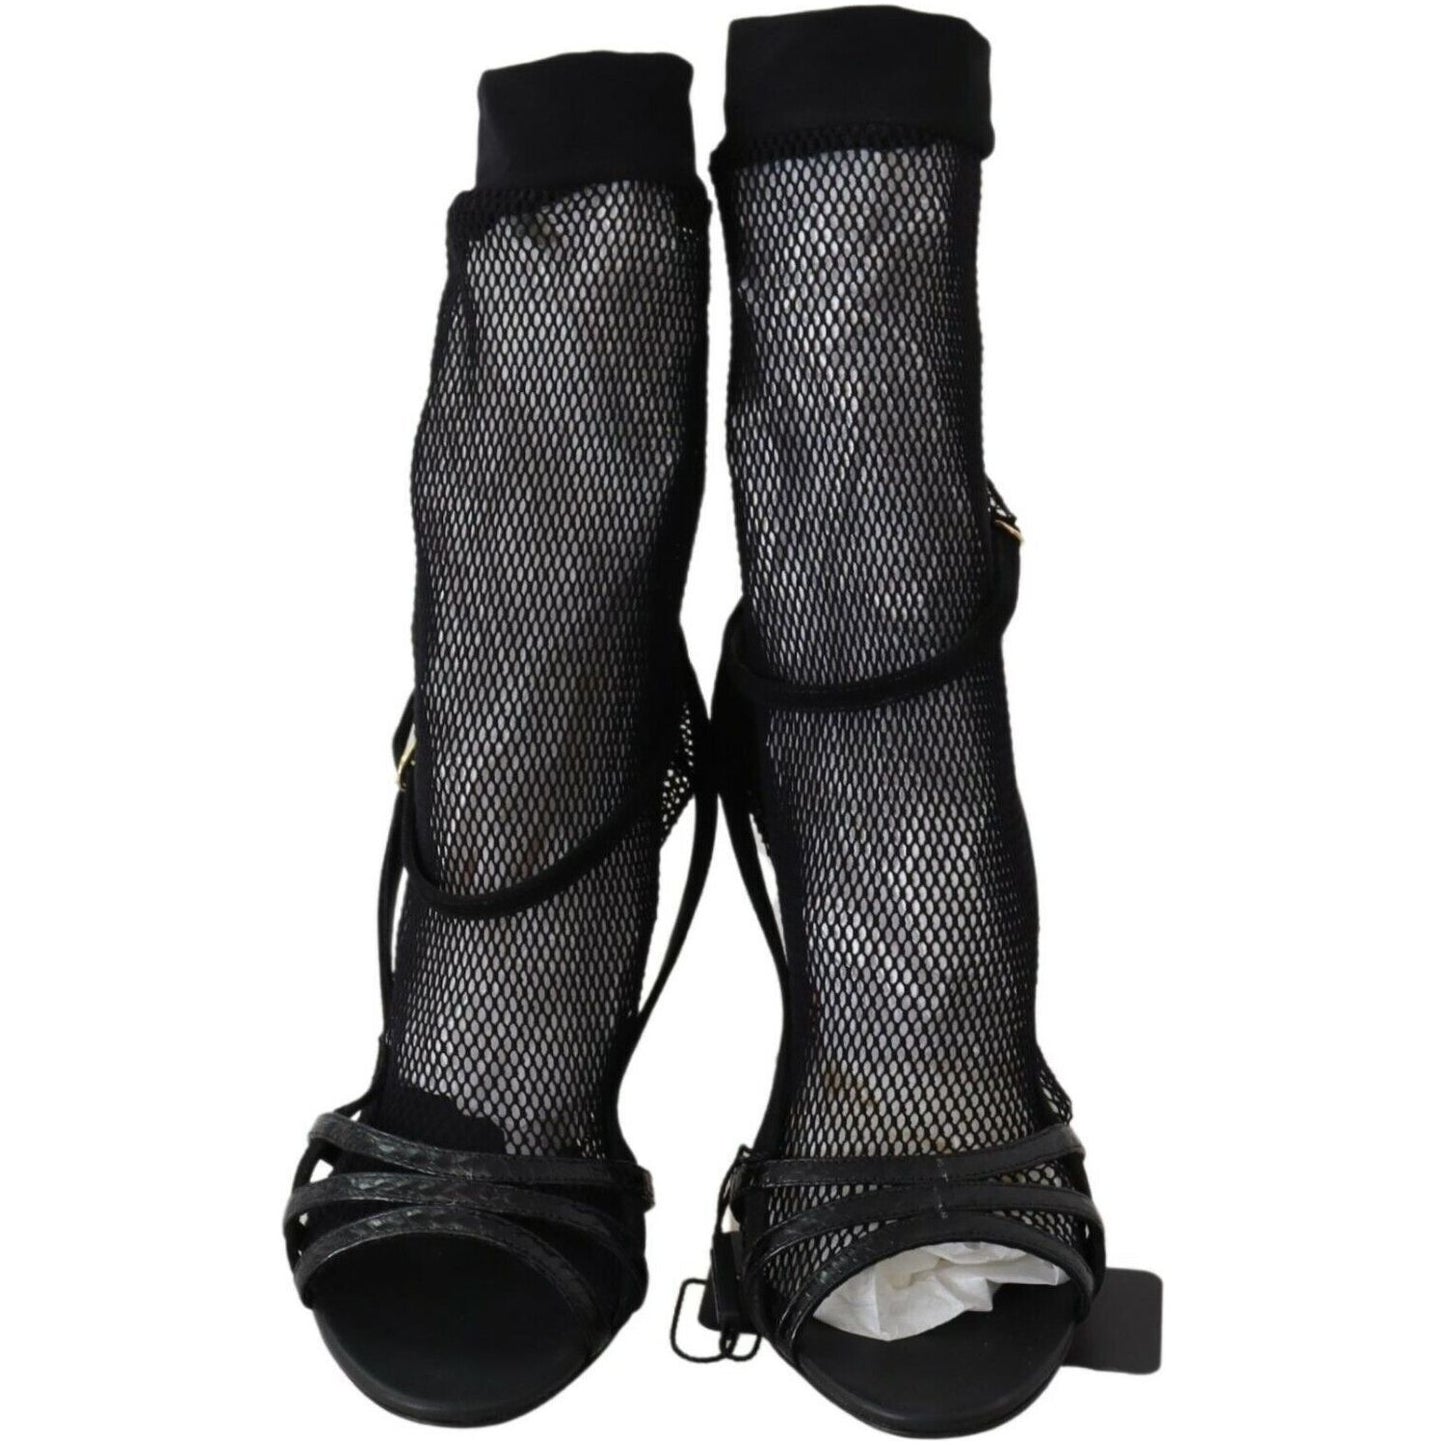 Dolce & Gabbana Chic Black Mesh Stiletto Sandals WOMAN SANDALS black-suede-short-boots-sandals-shoes